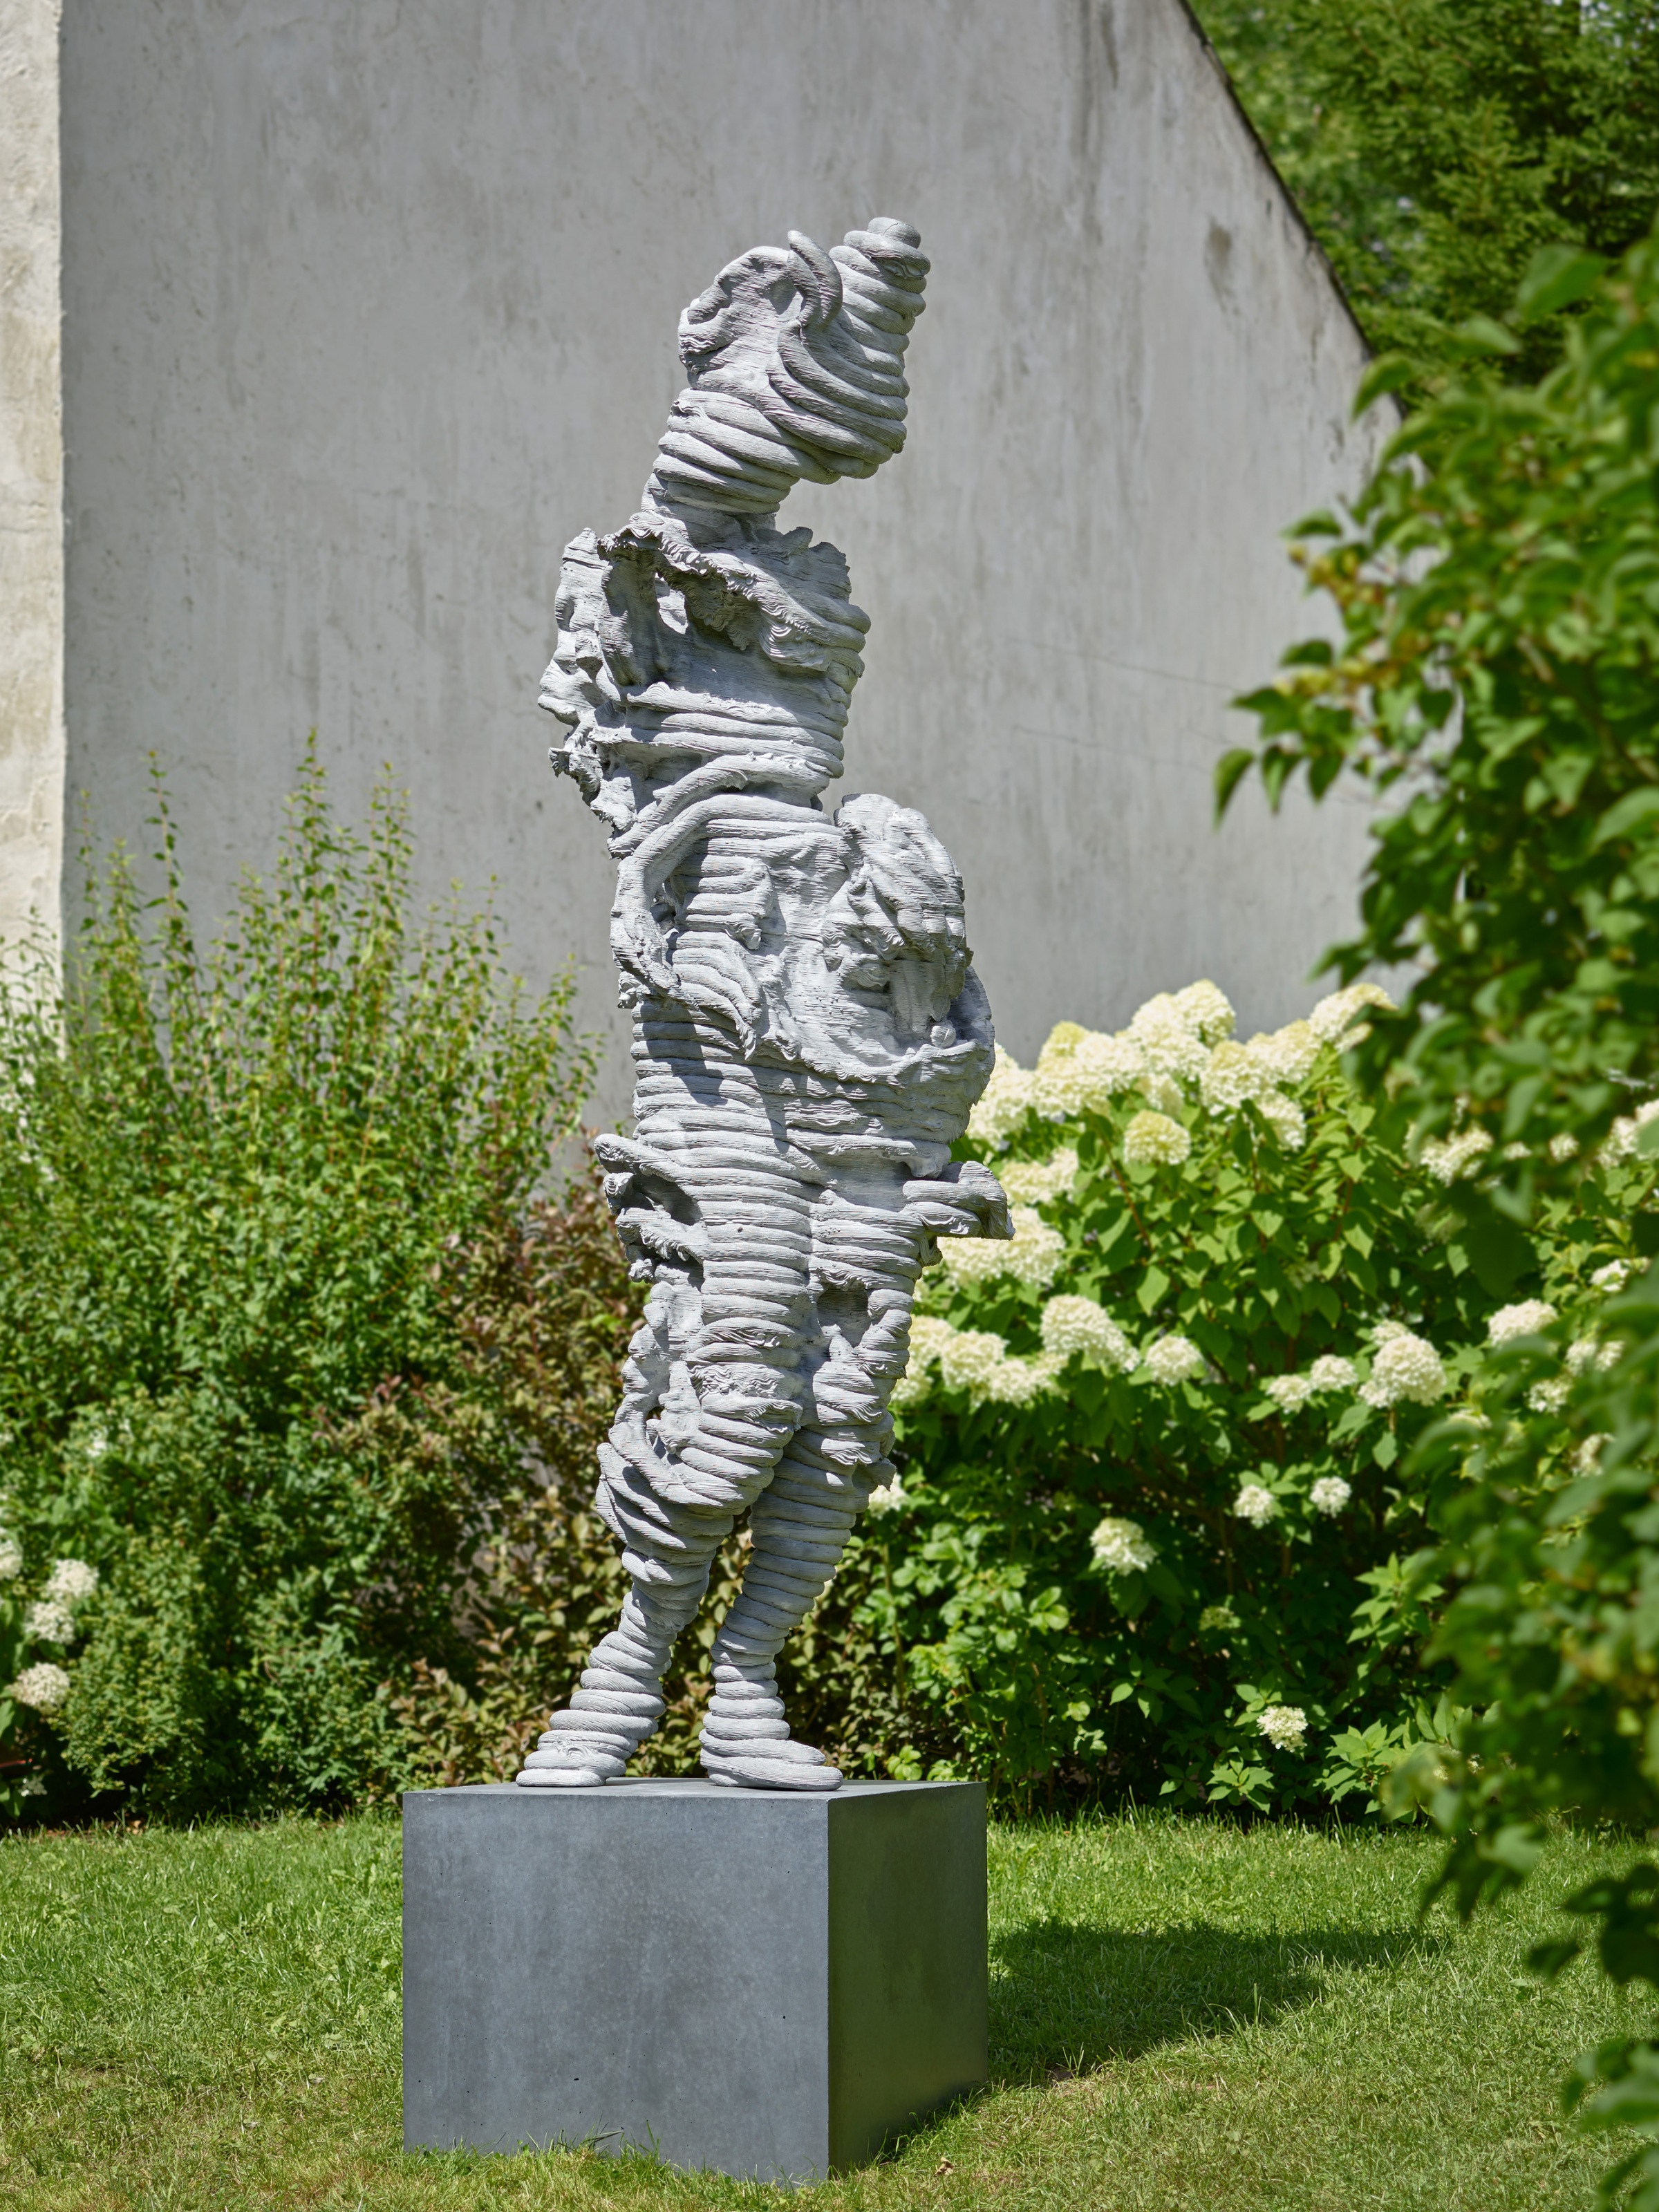 Toby Ziegler, Slave, 2017 cast aluminium on Ciment Fondu plinth sculpture: 255 x 90 x 60 cm.; 100 3/8 x 35 3/8 x 23 5/8 in. plinth: 55 x 73.5 x 72.5 cm.; 21 5/8 x 29 x 28 1/2 in.